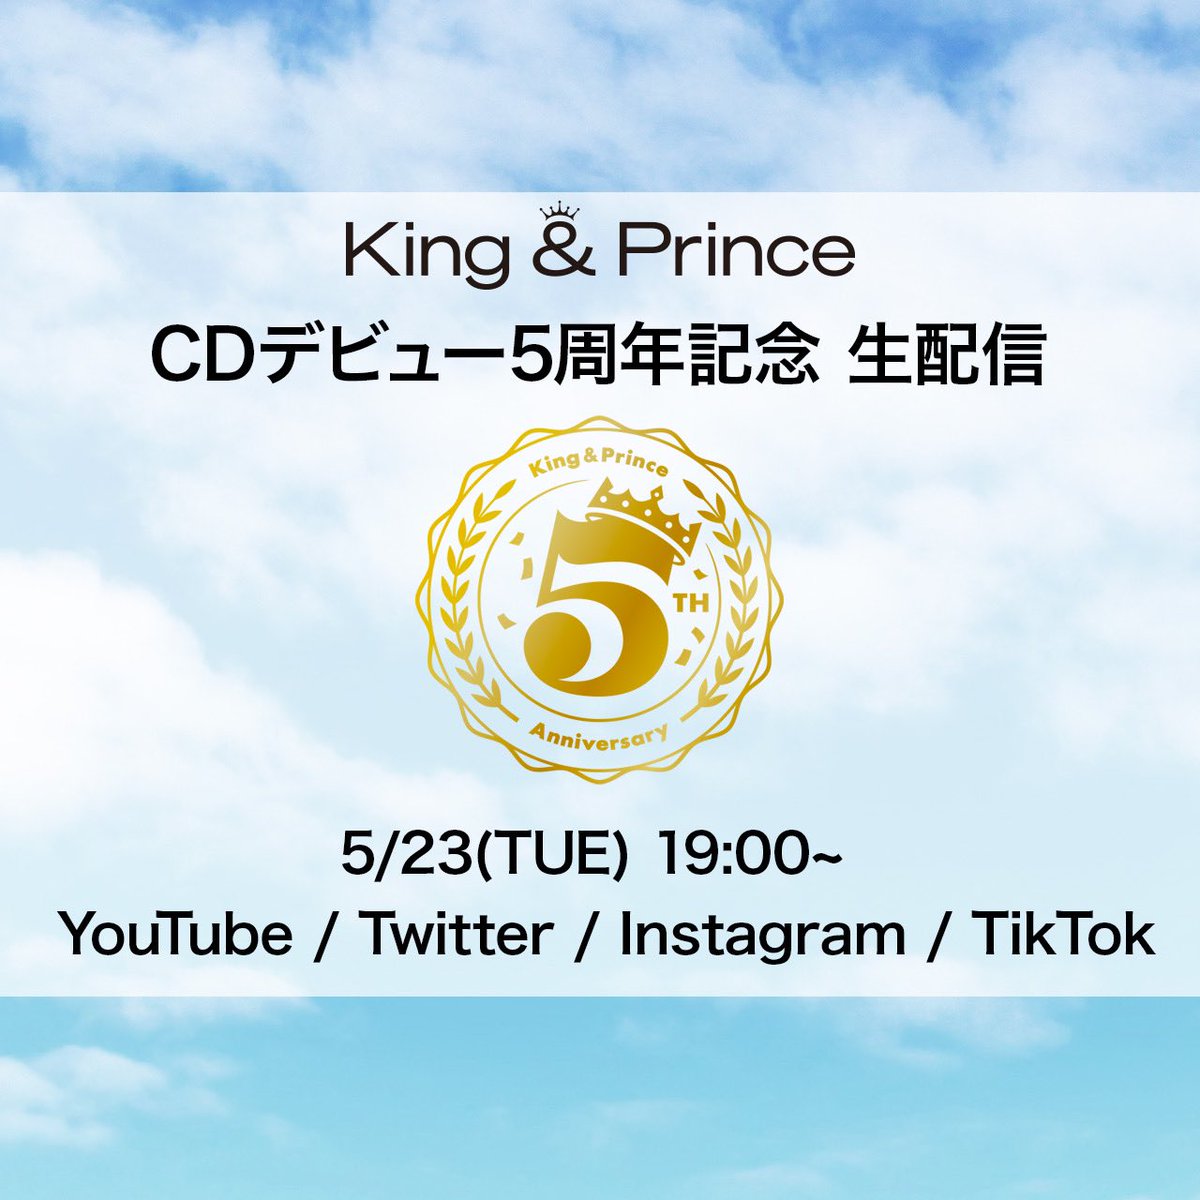 5/23(火) 19:00から
King & Prince CDデビュー5周年記念
で生配信一斉に

やるよ！

・YouTube LIVE
▶︎youtube.com/live/KMuqpa5fp…
・Twitter LIVE
・Instagram LIVE
・TikTok LIVE

#キンプリデビュー5周年ありがとう
#KingandPrince